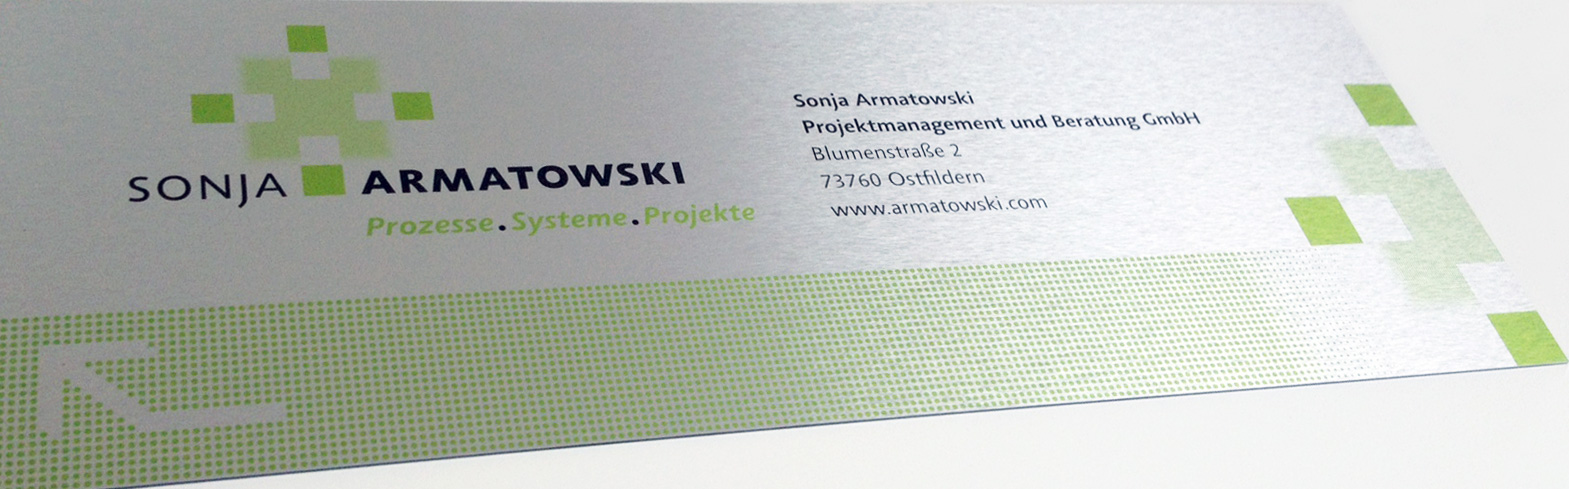 Corporate Design für Sonja Armatowski GmbH, Prozesse, Systeme, Projekte